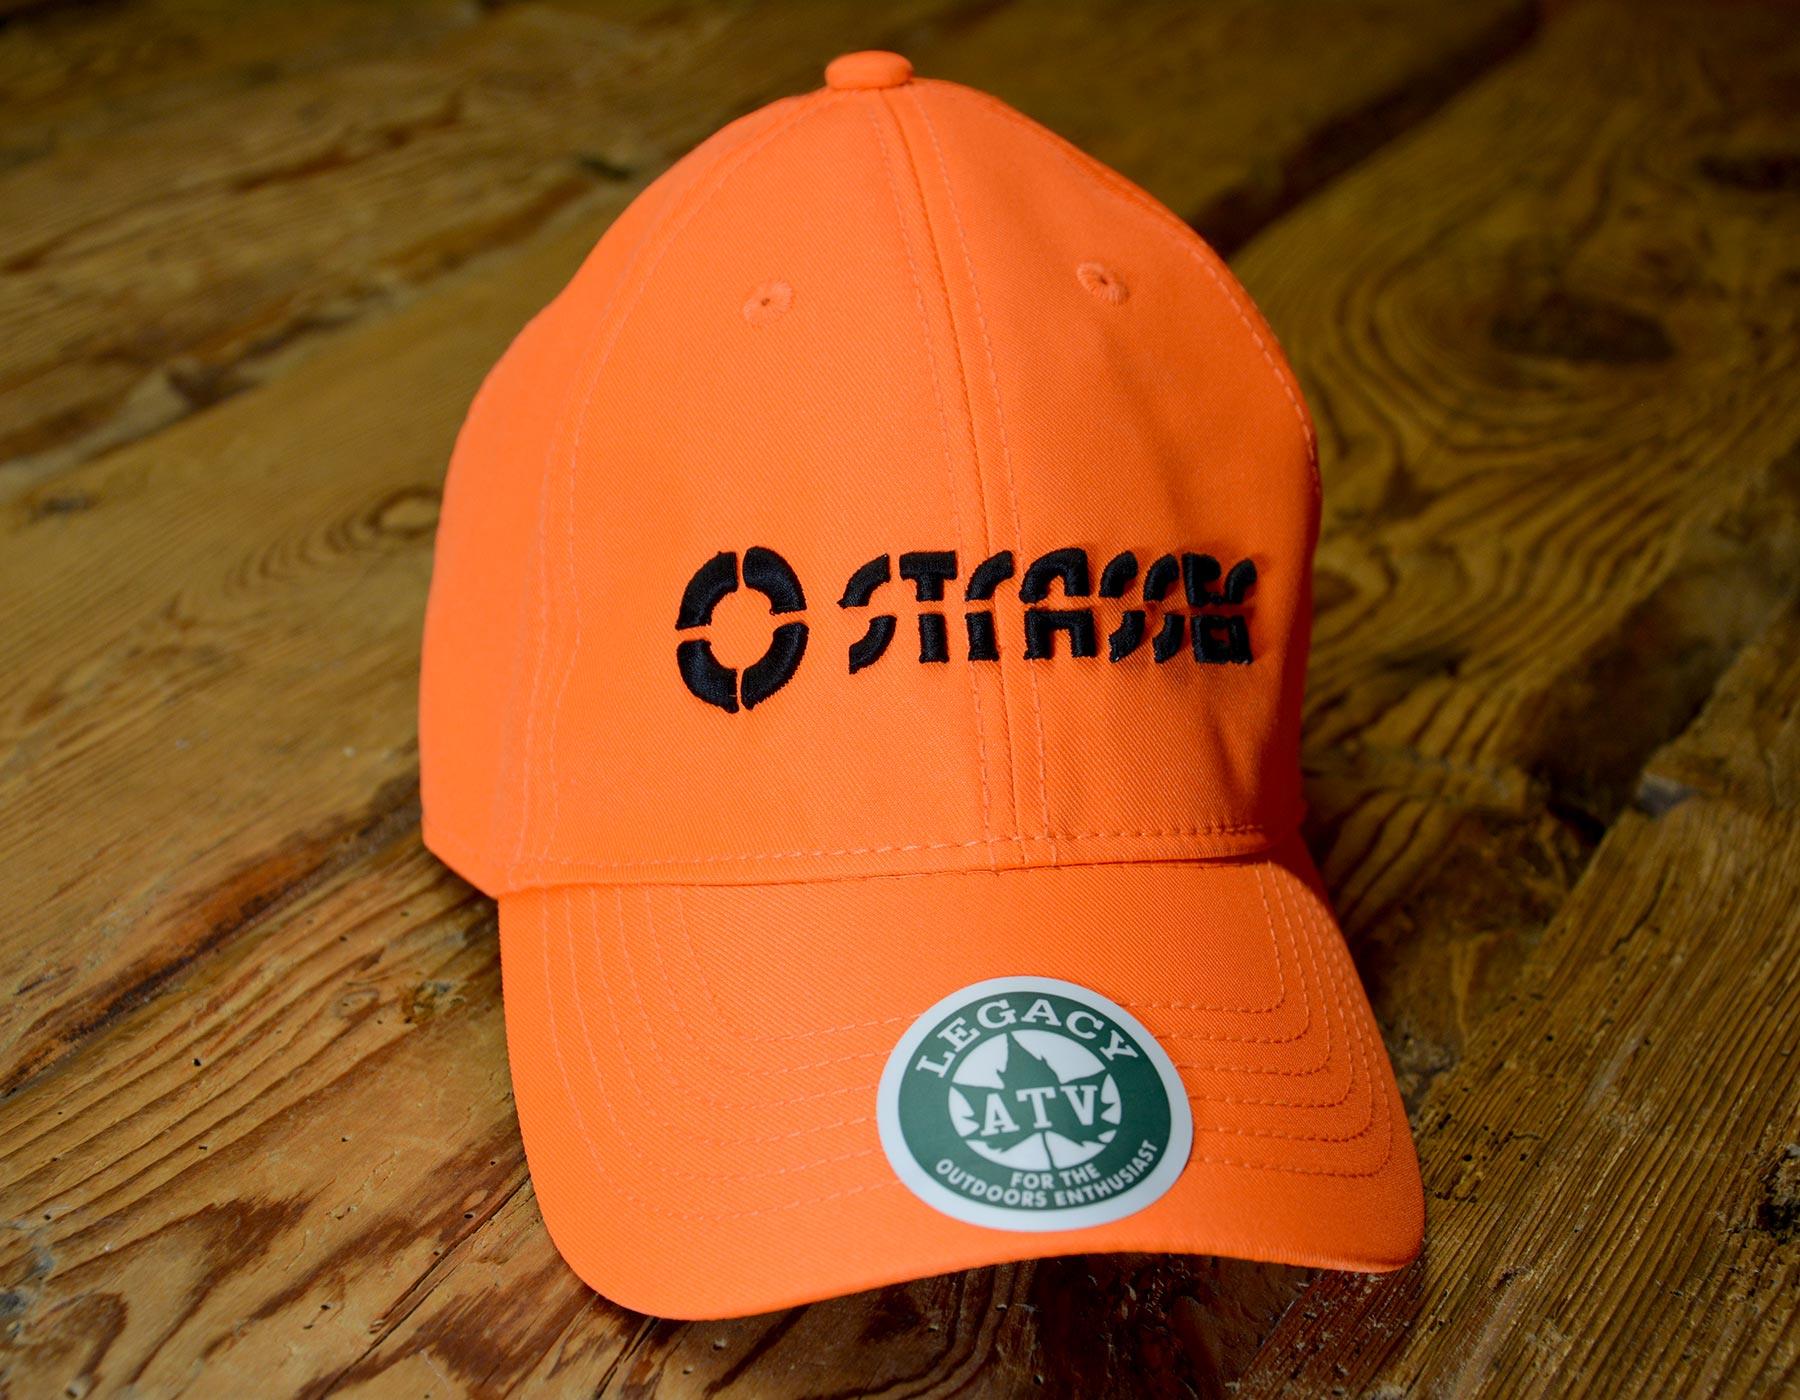 STRASSER orange baseball cap